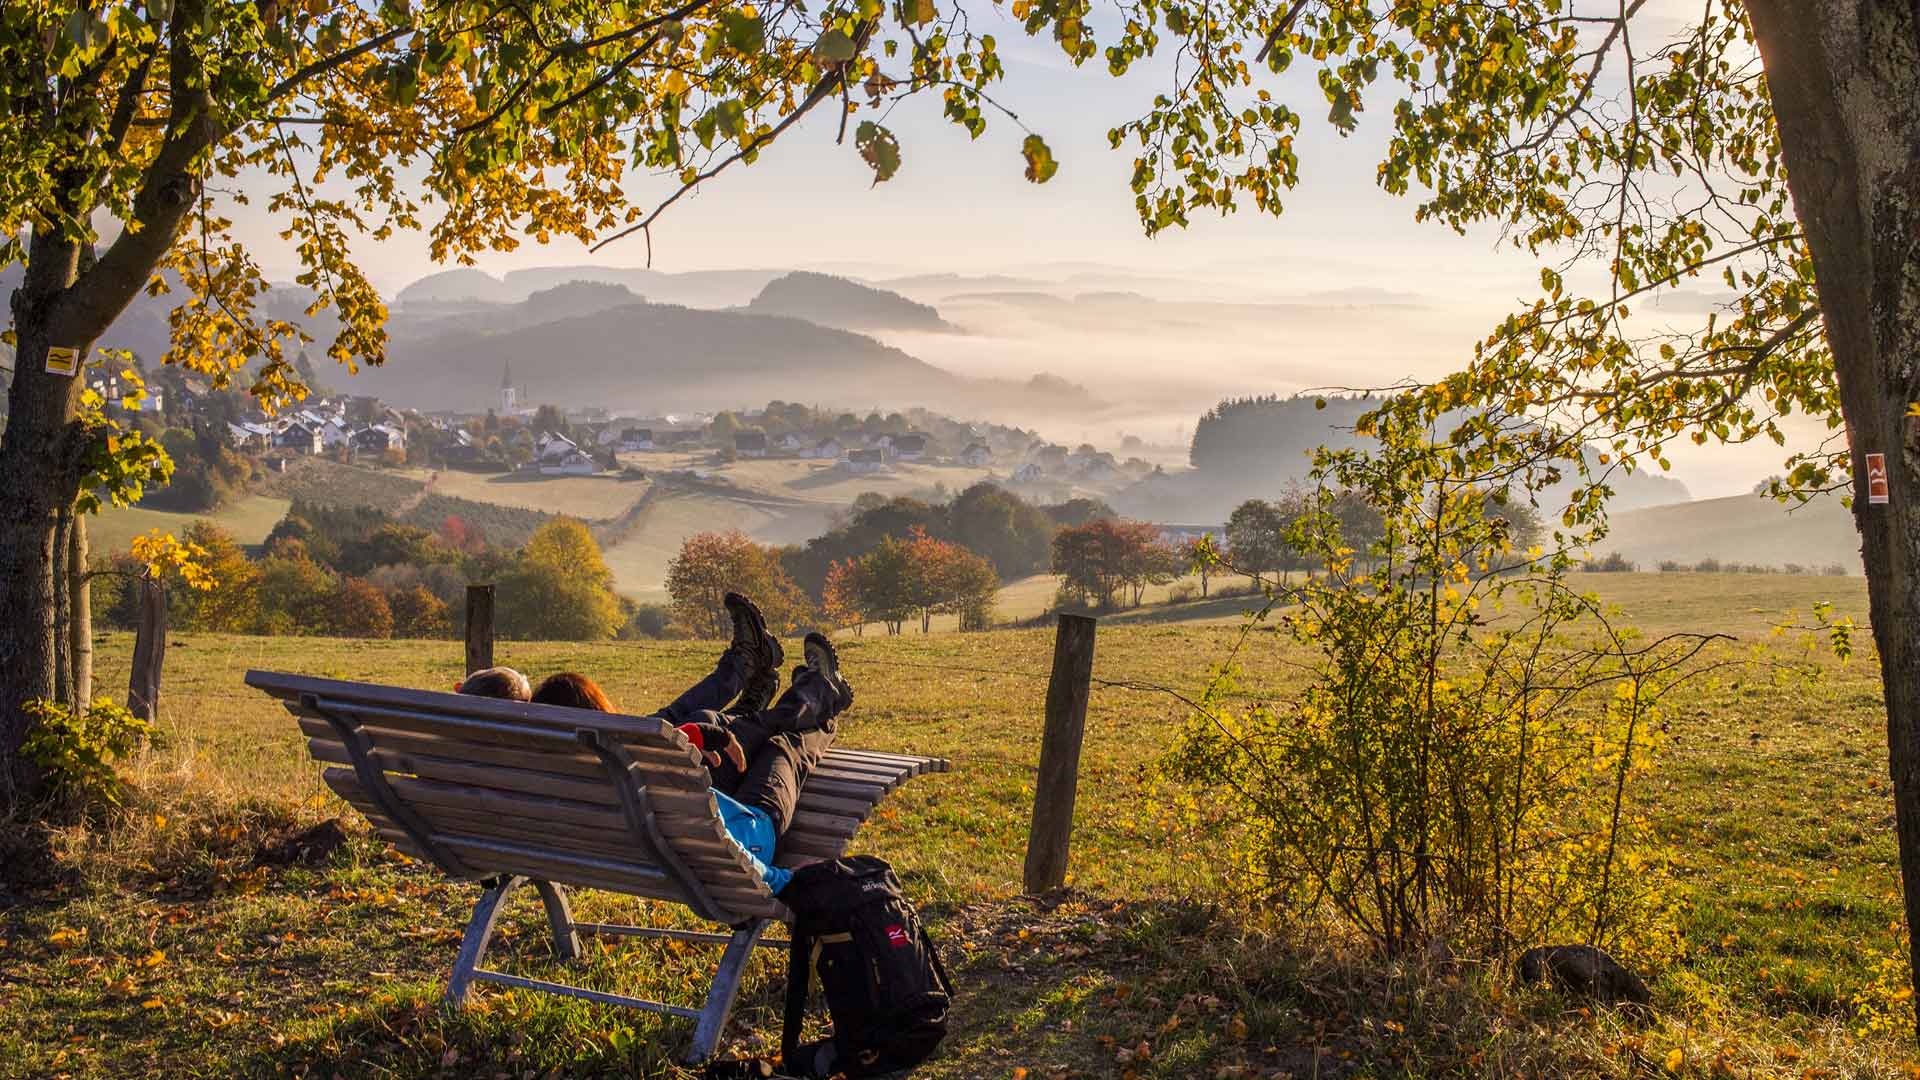 Ook in de herfst kun je fijn wandelen op de Rothaarsteig. © Rothaarsteigverein e.V. - Klaus-Peter Kappest